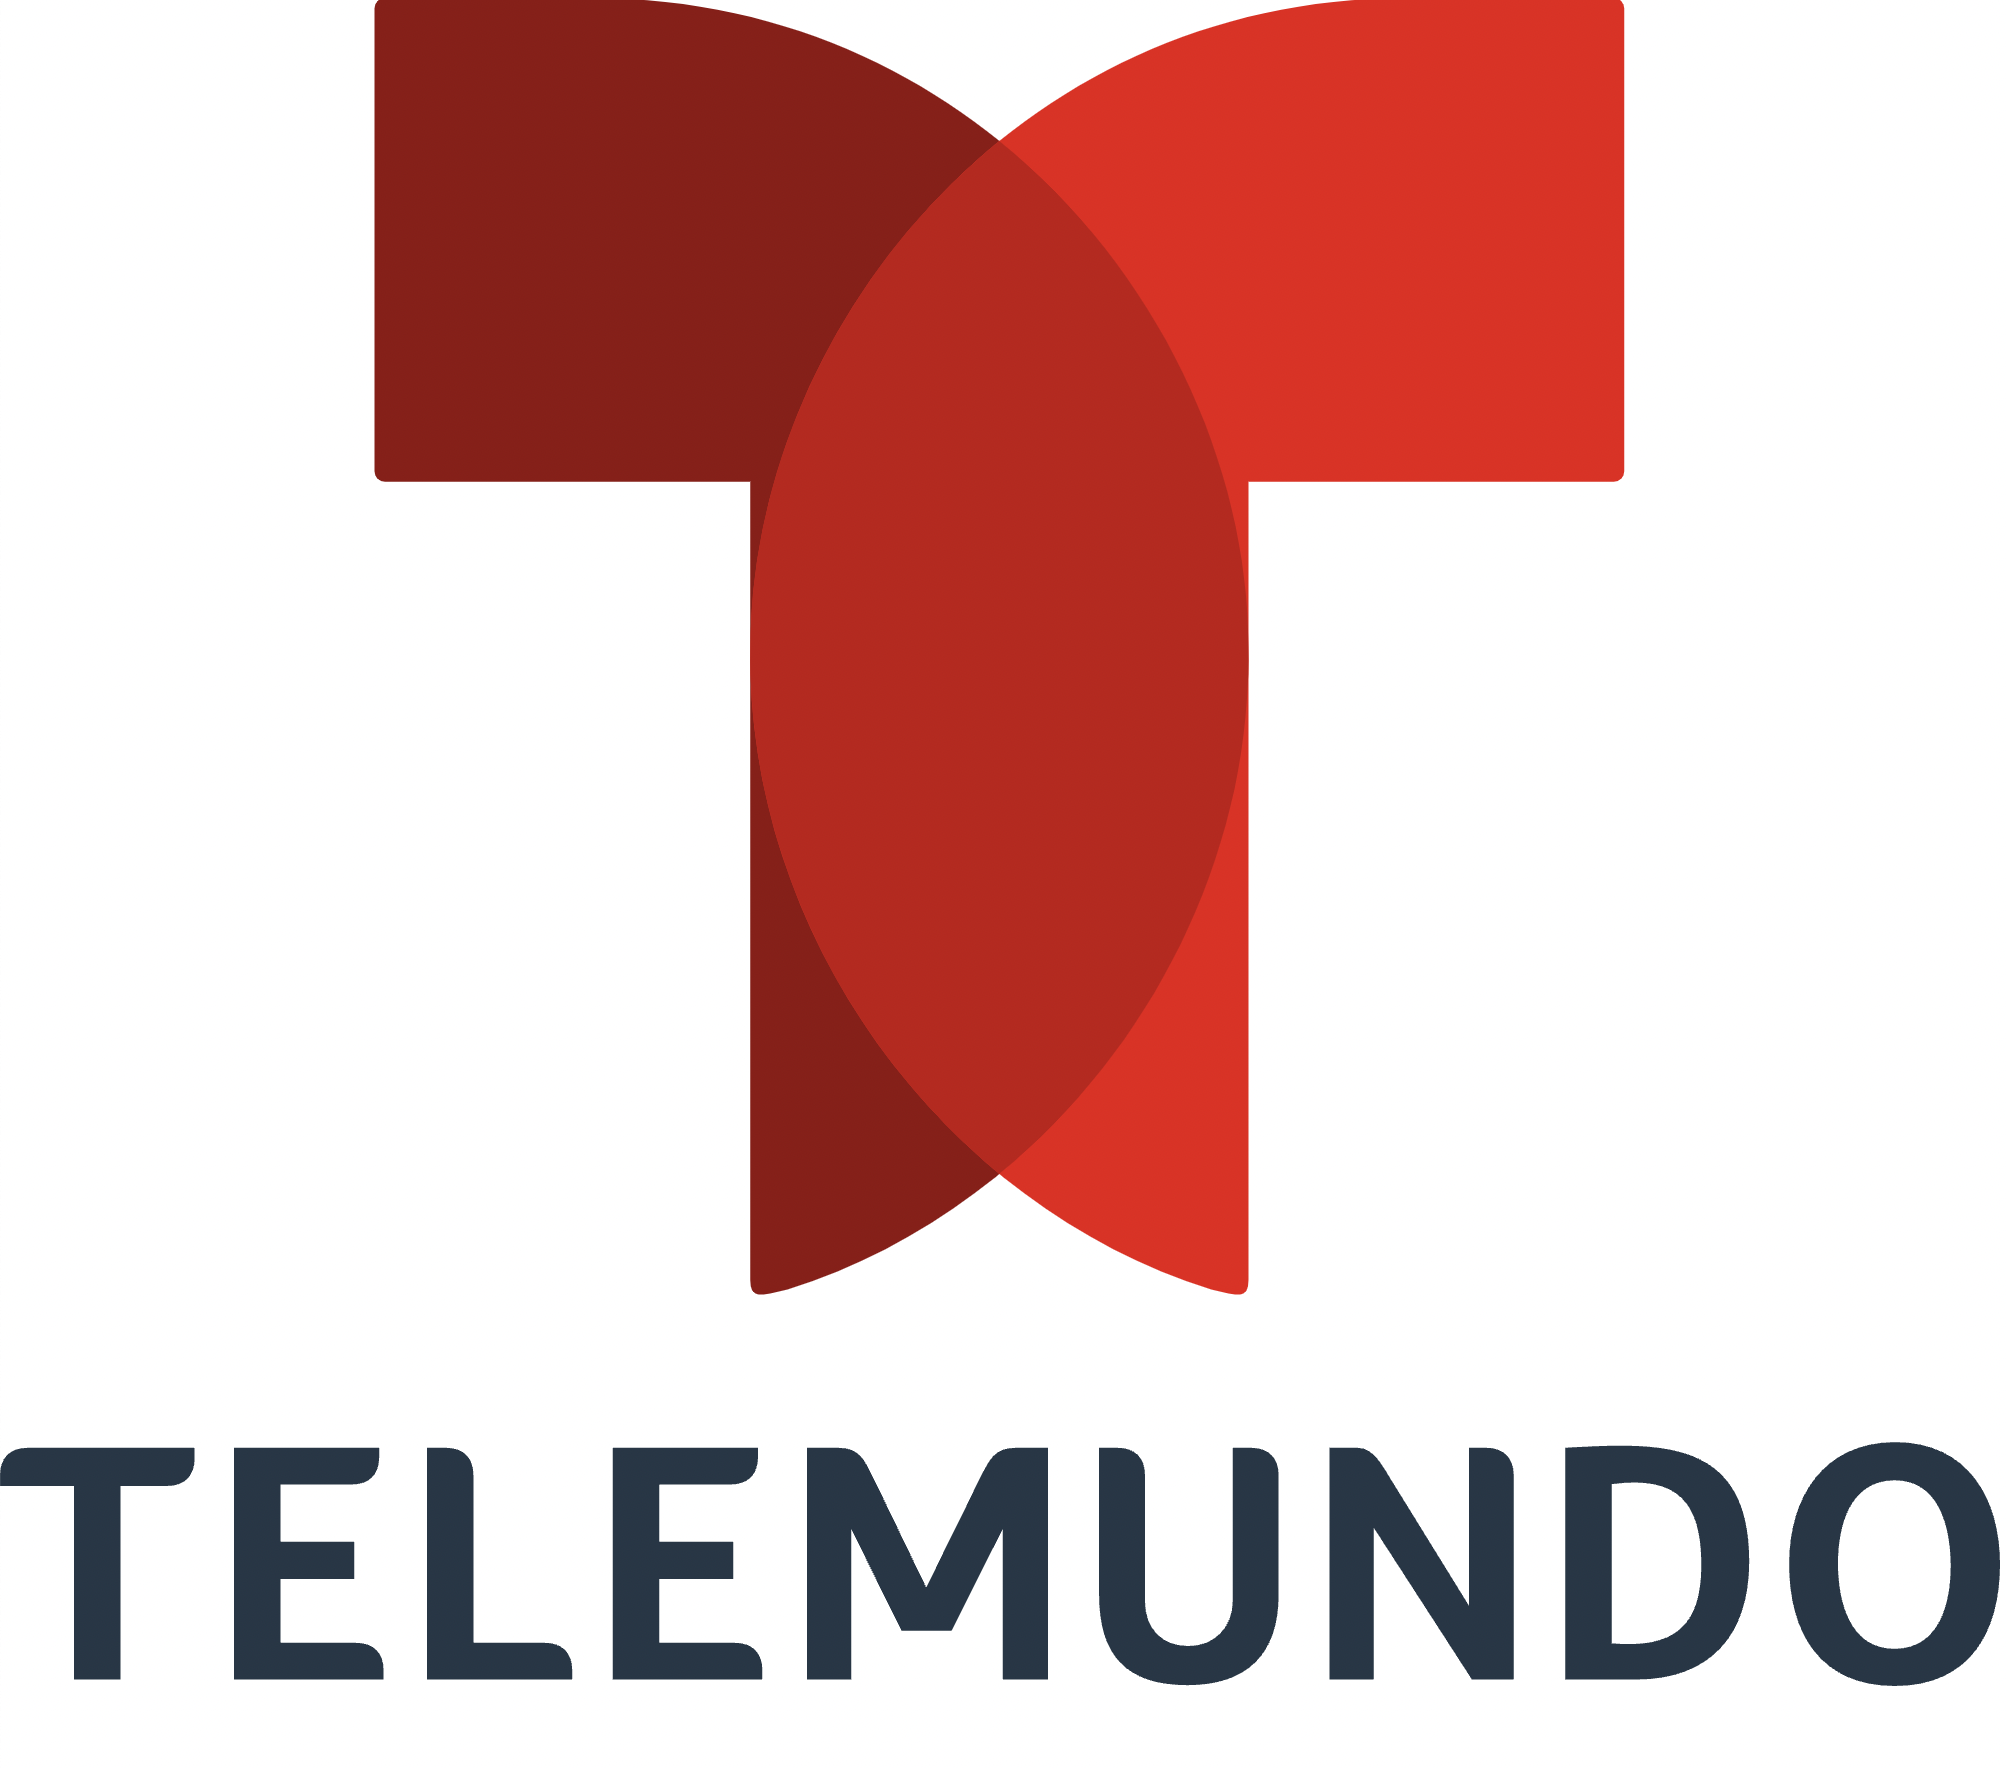 A red and blue logo for telemundo.